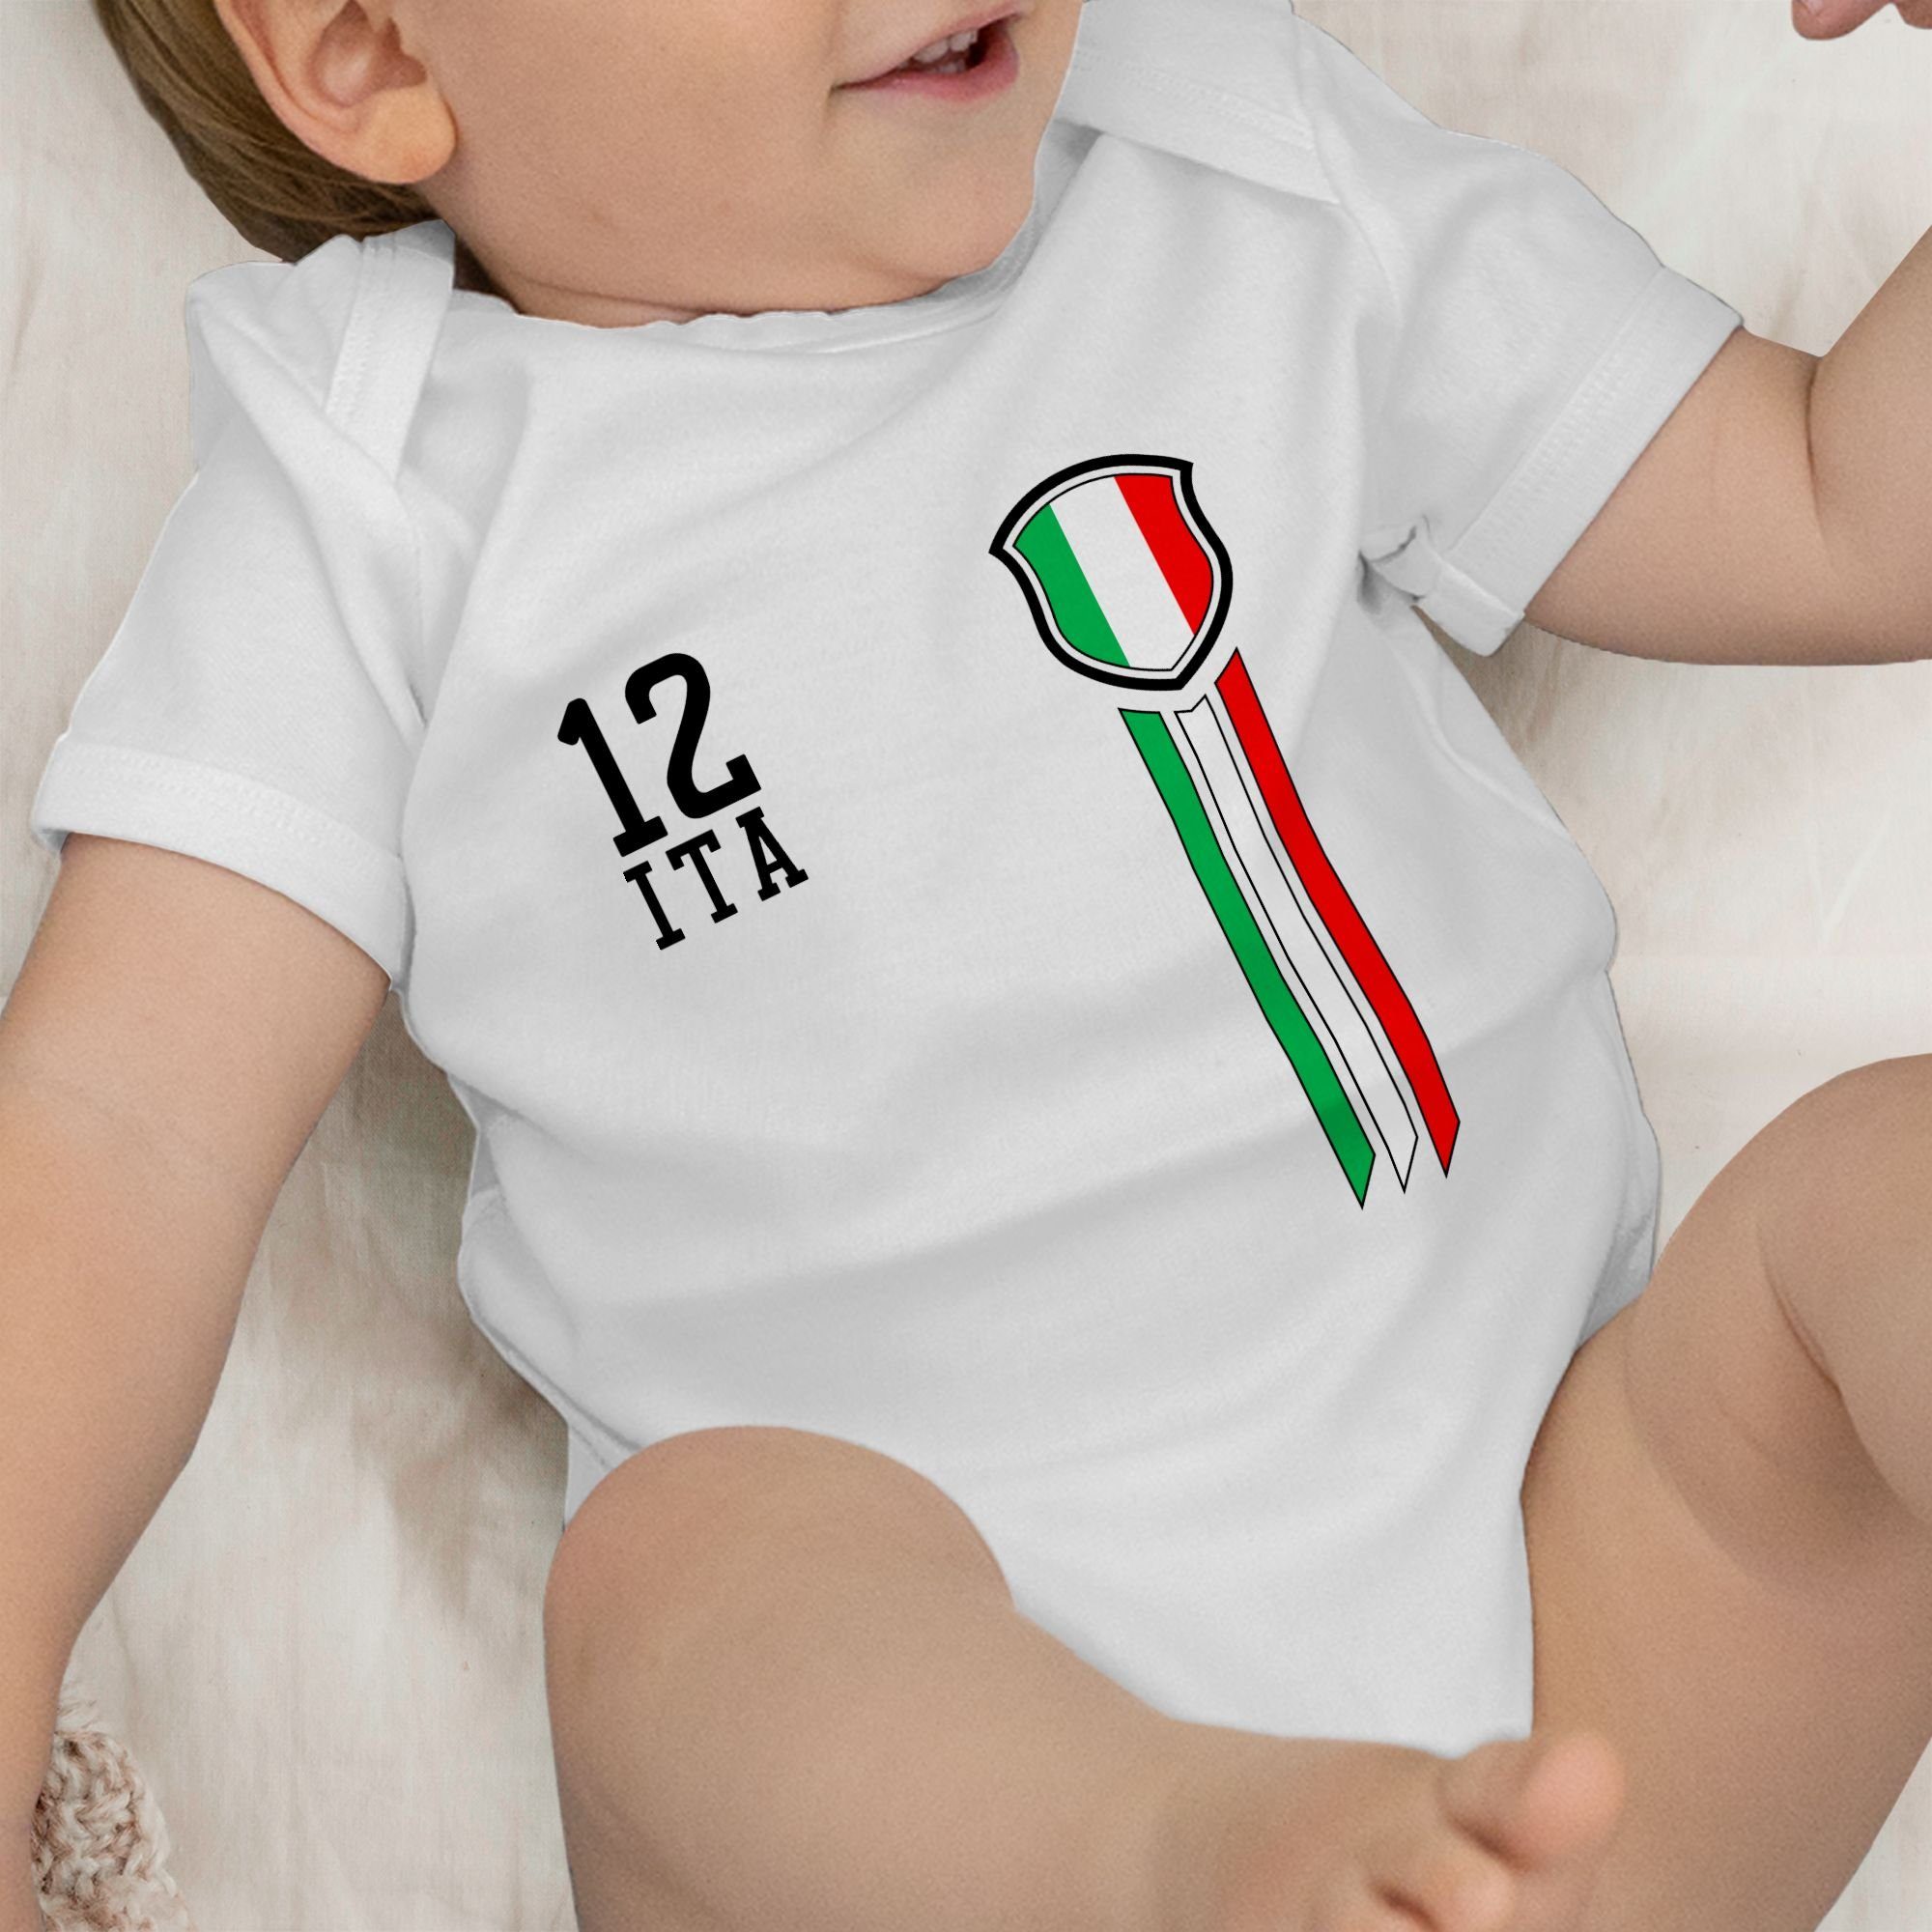 Shirtracer Shirtbody EM Baby Fanshirt Mann 2024 3 12. Weiß Italien Fussball